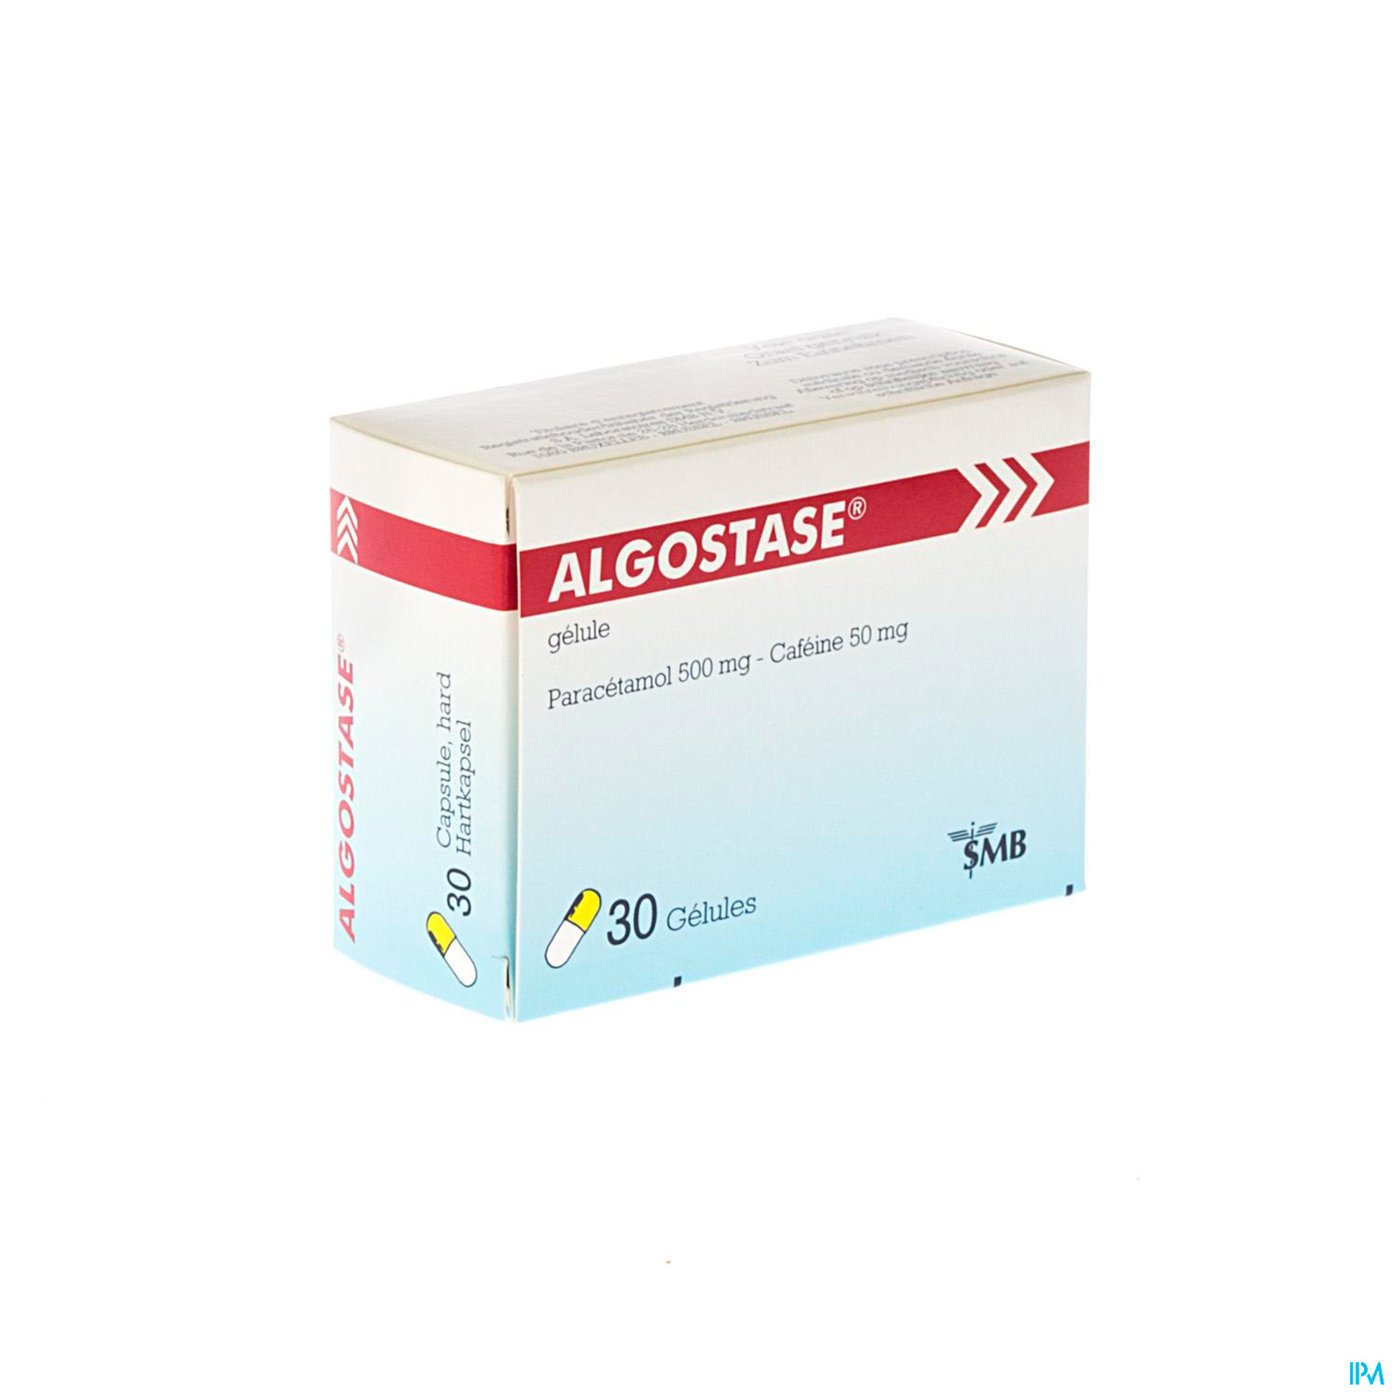 Algostase Nf Caps. 30 packshot